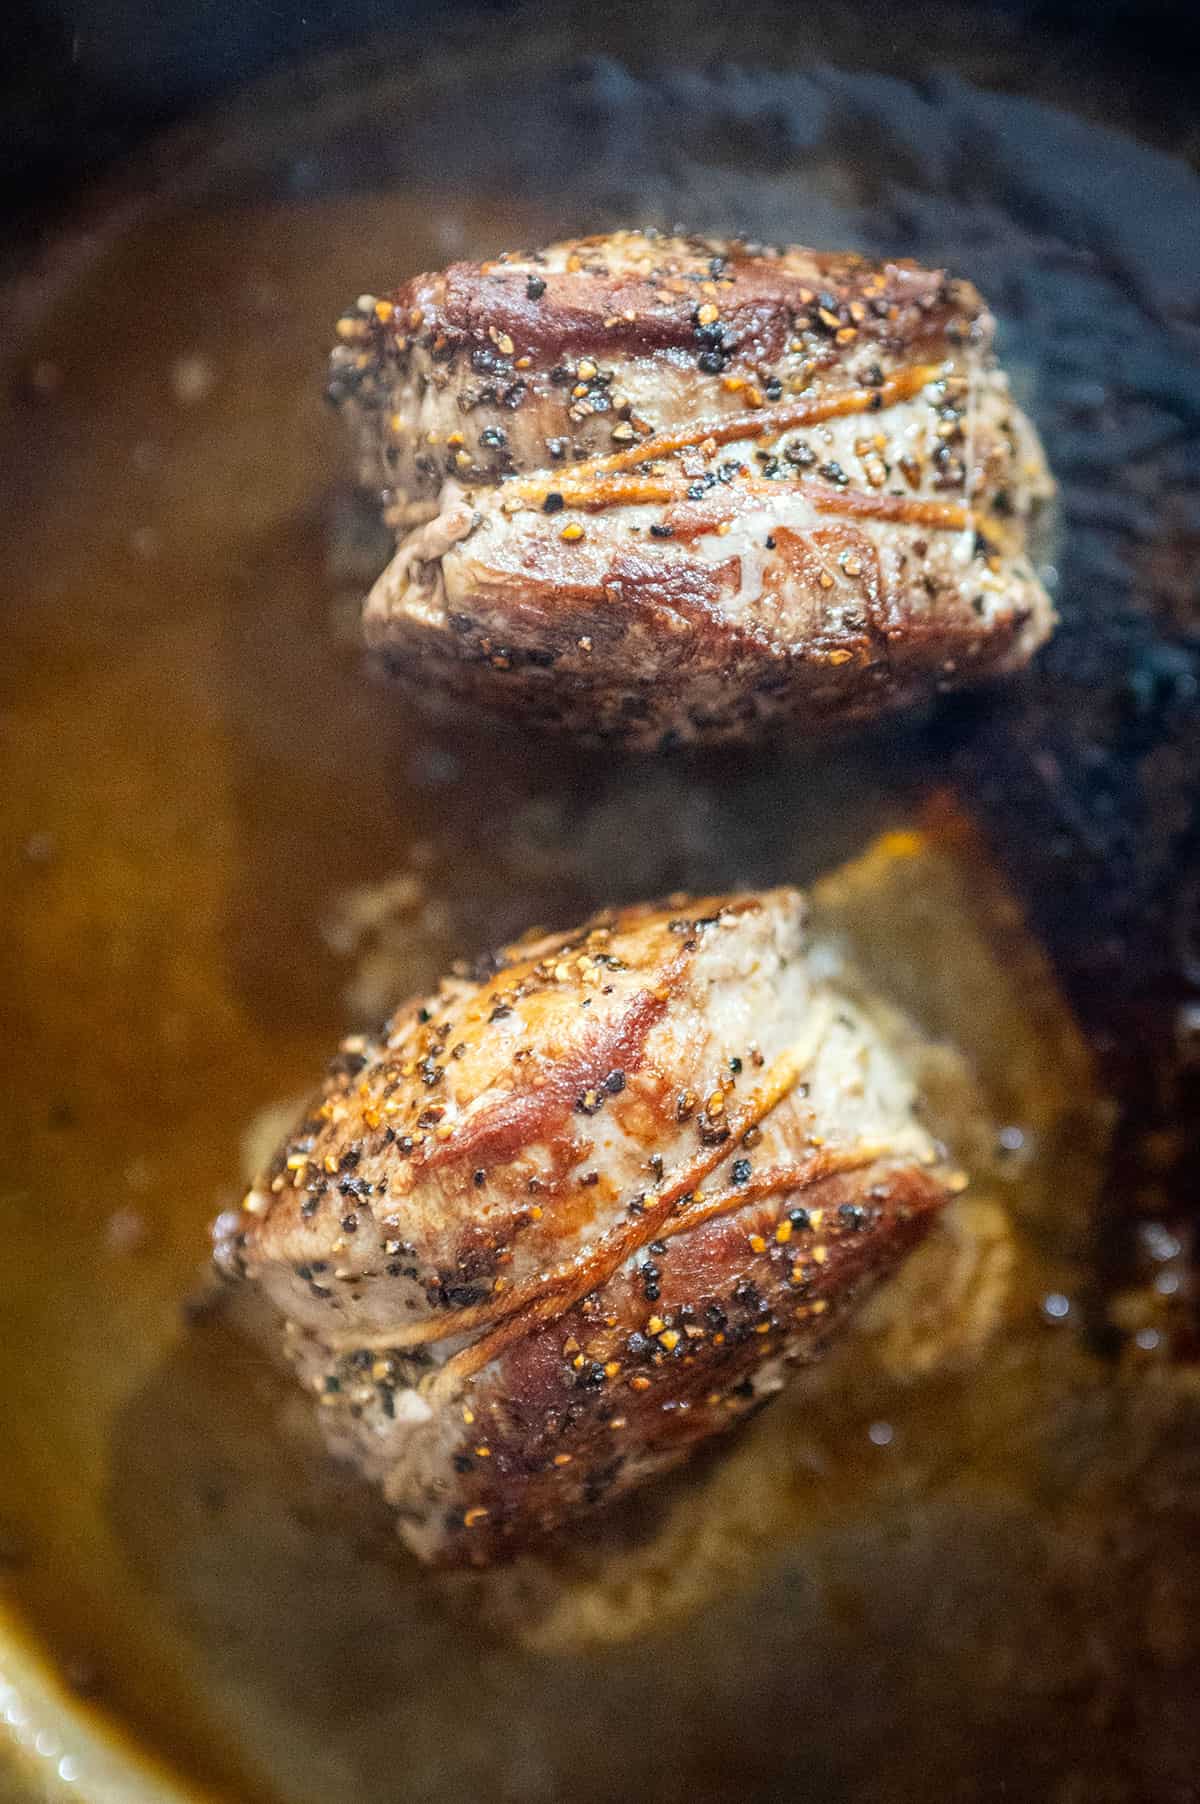 Filet mignon steaks searing on side.